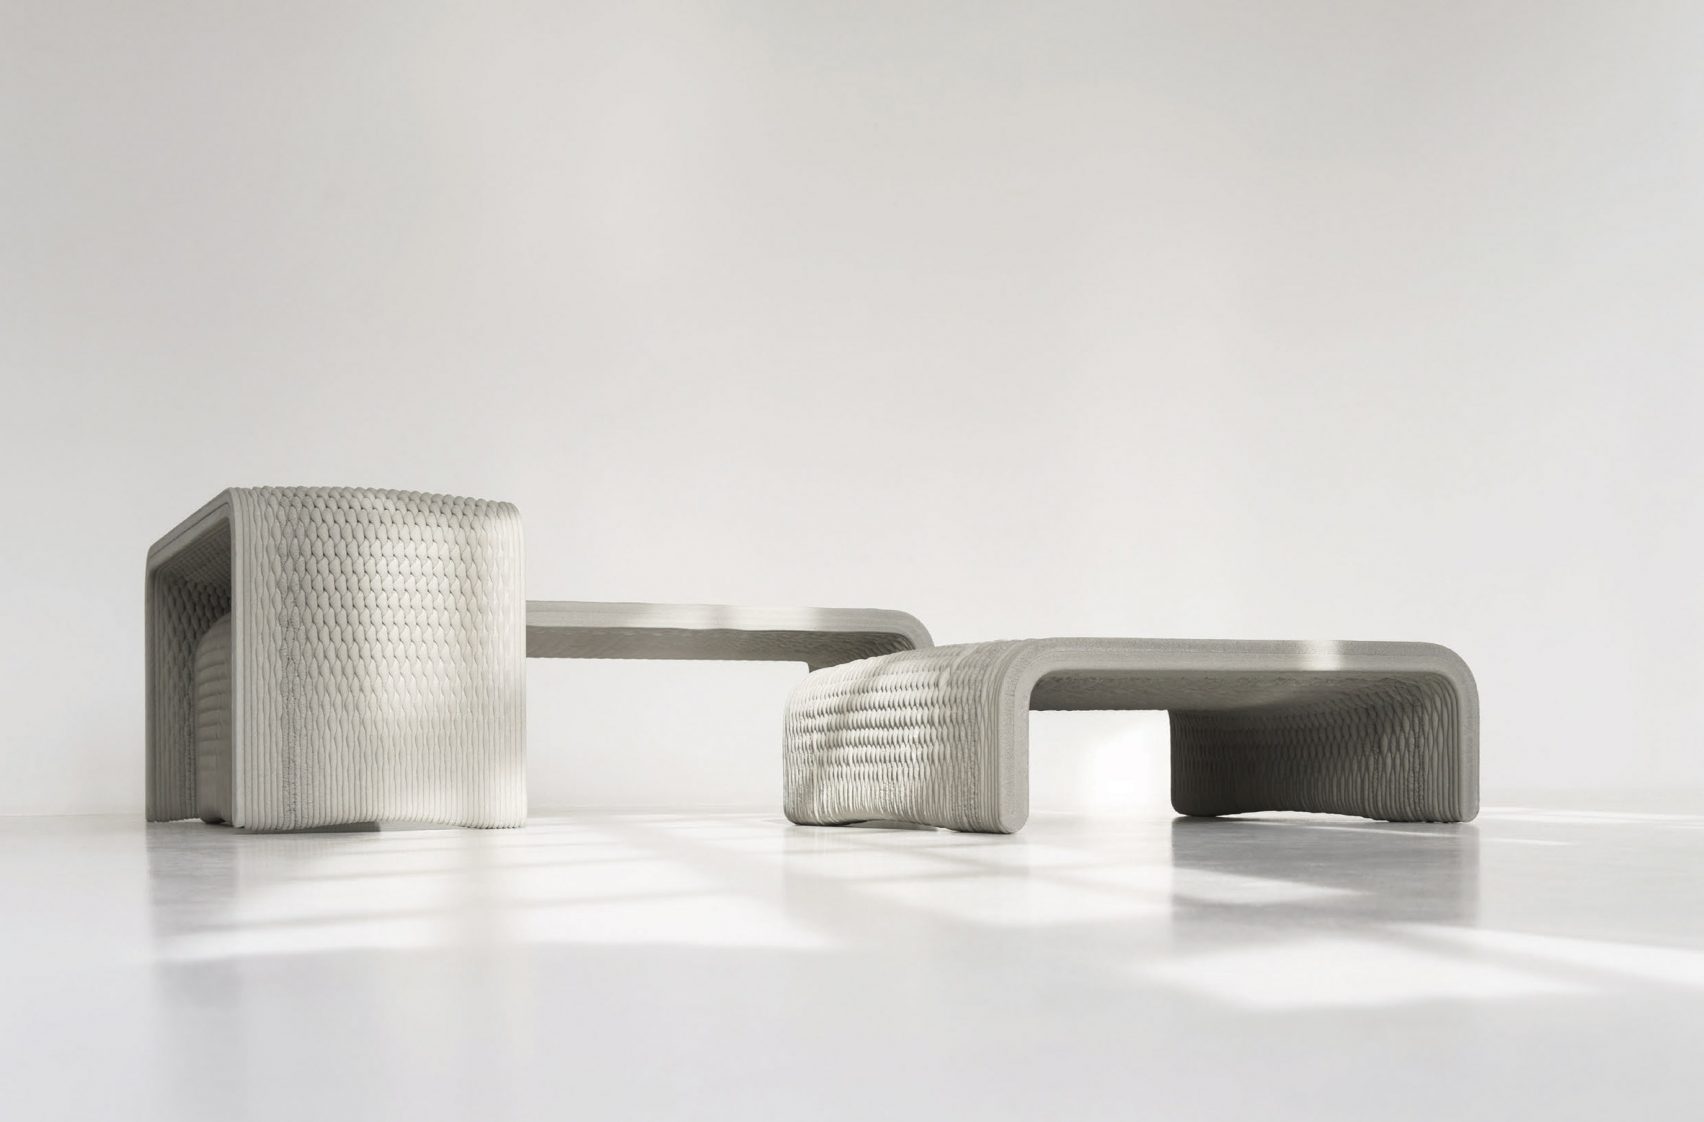 Колекция скамеек, выполненных из бетона на 3D-принтере